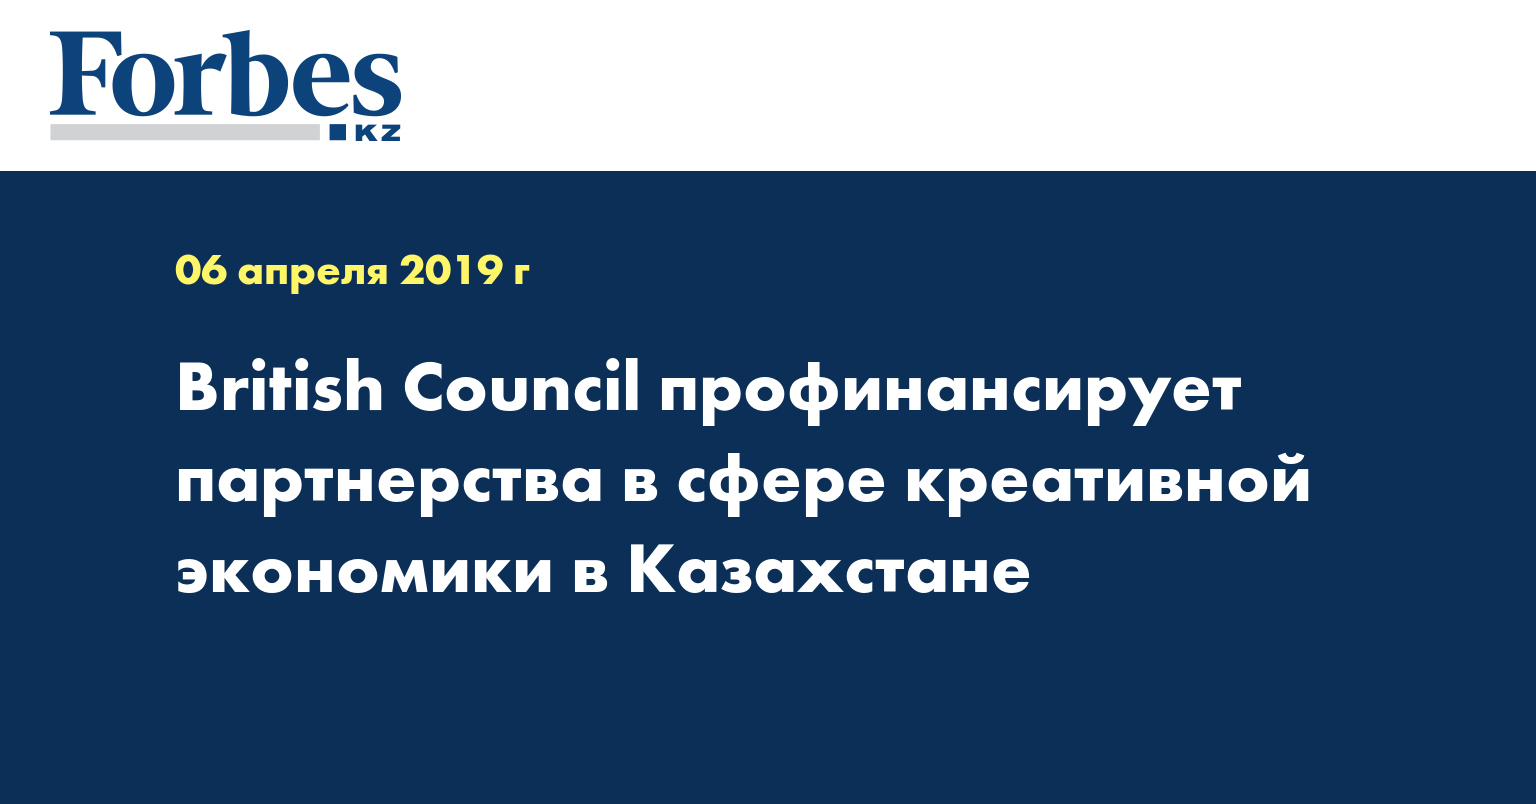 British Council профинансирует партнерства в сфере креативной экономики в Казахстане